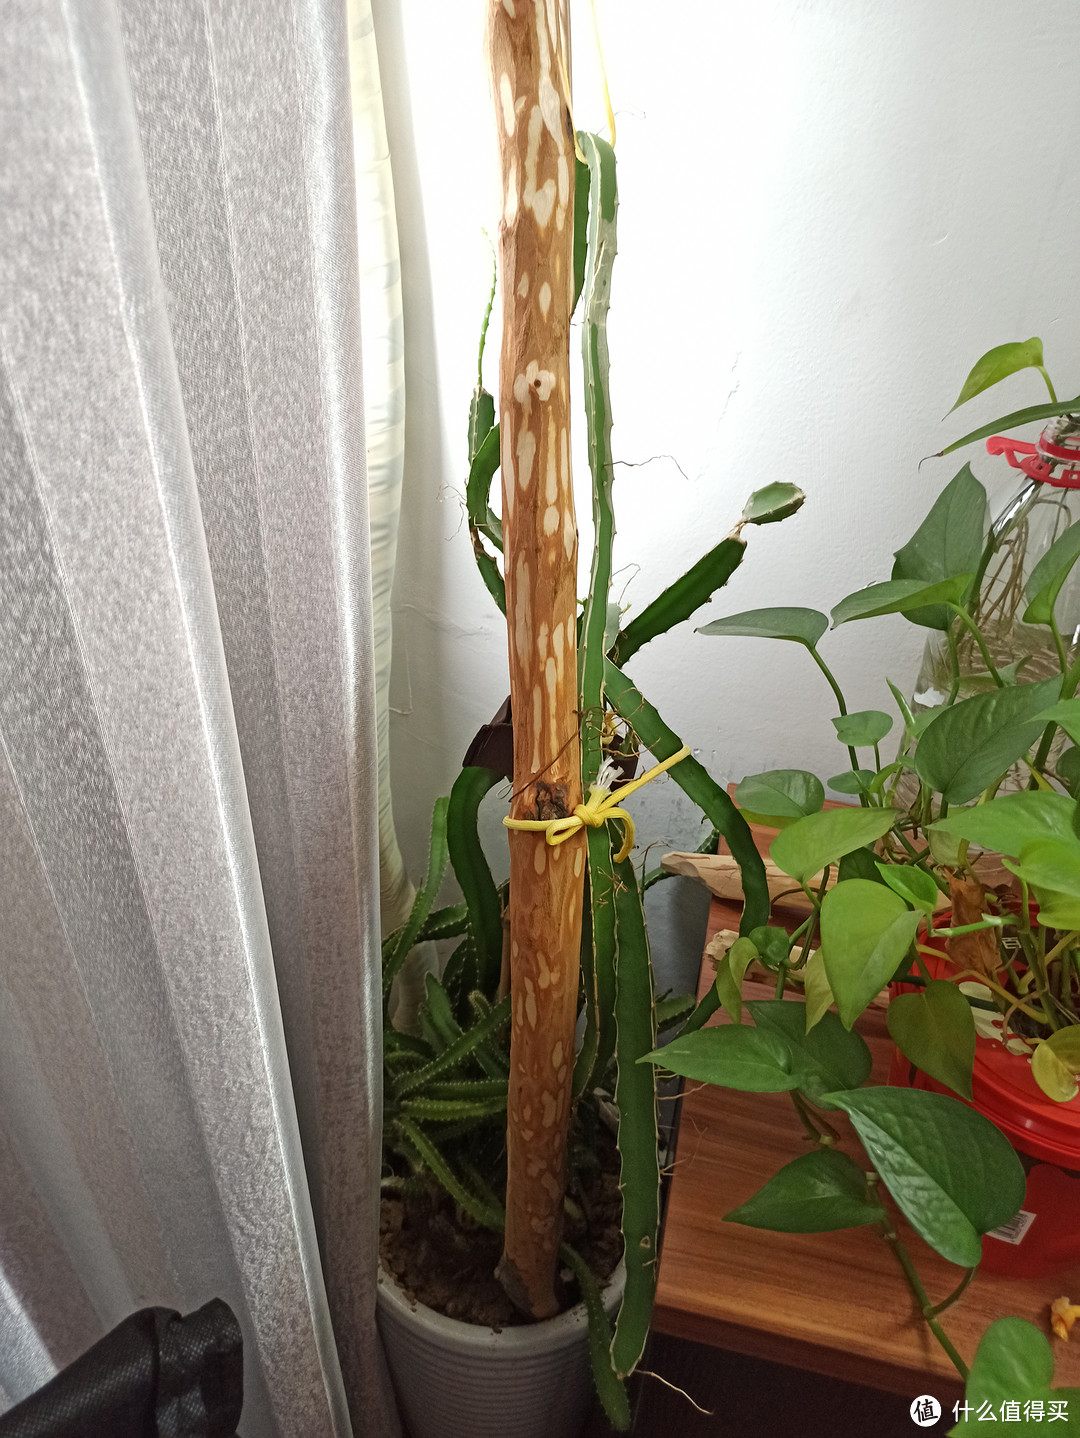 从种子种成的火龙果苗越长越长了，已经有1米6高了，下一步应该怎么处理，才能让它越长越壮？